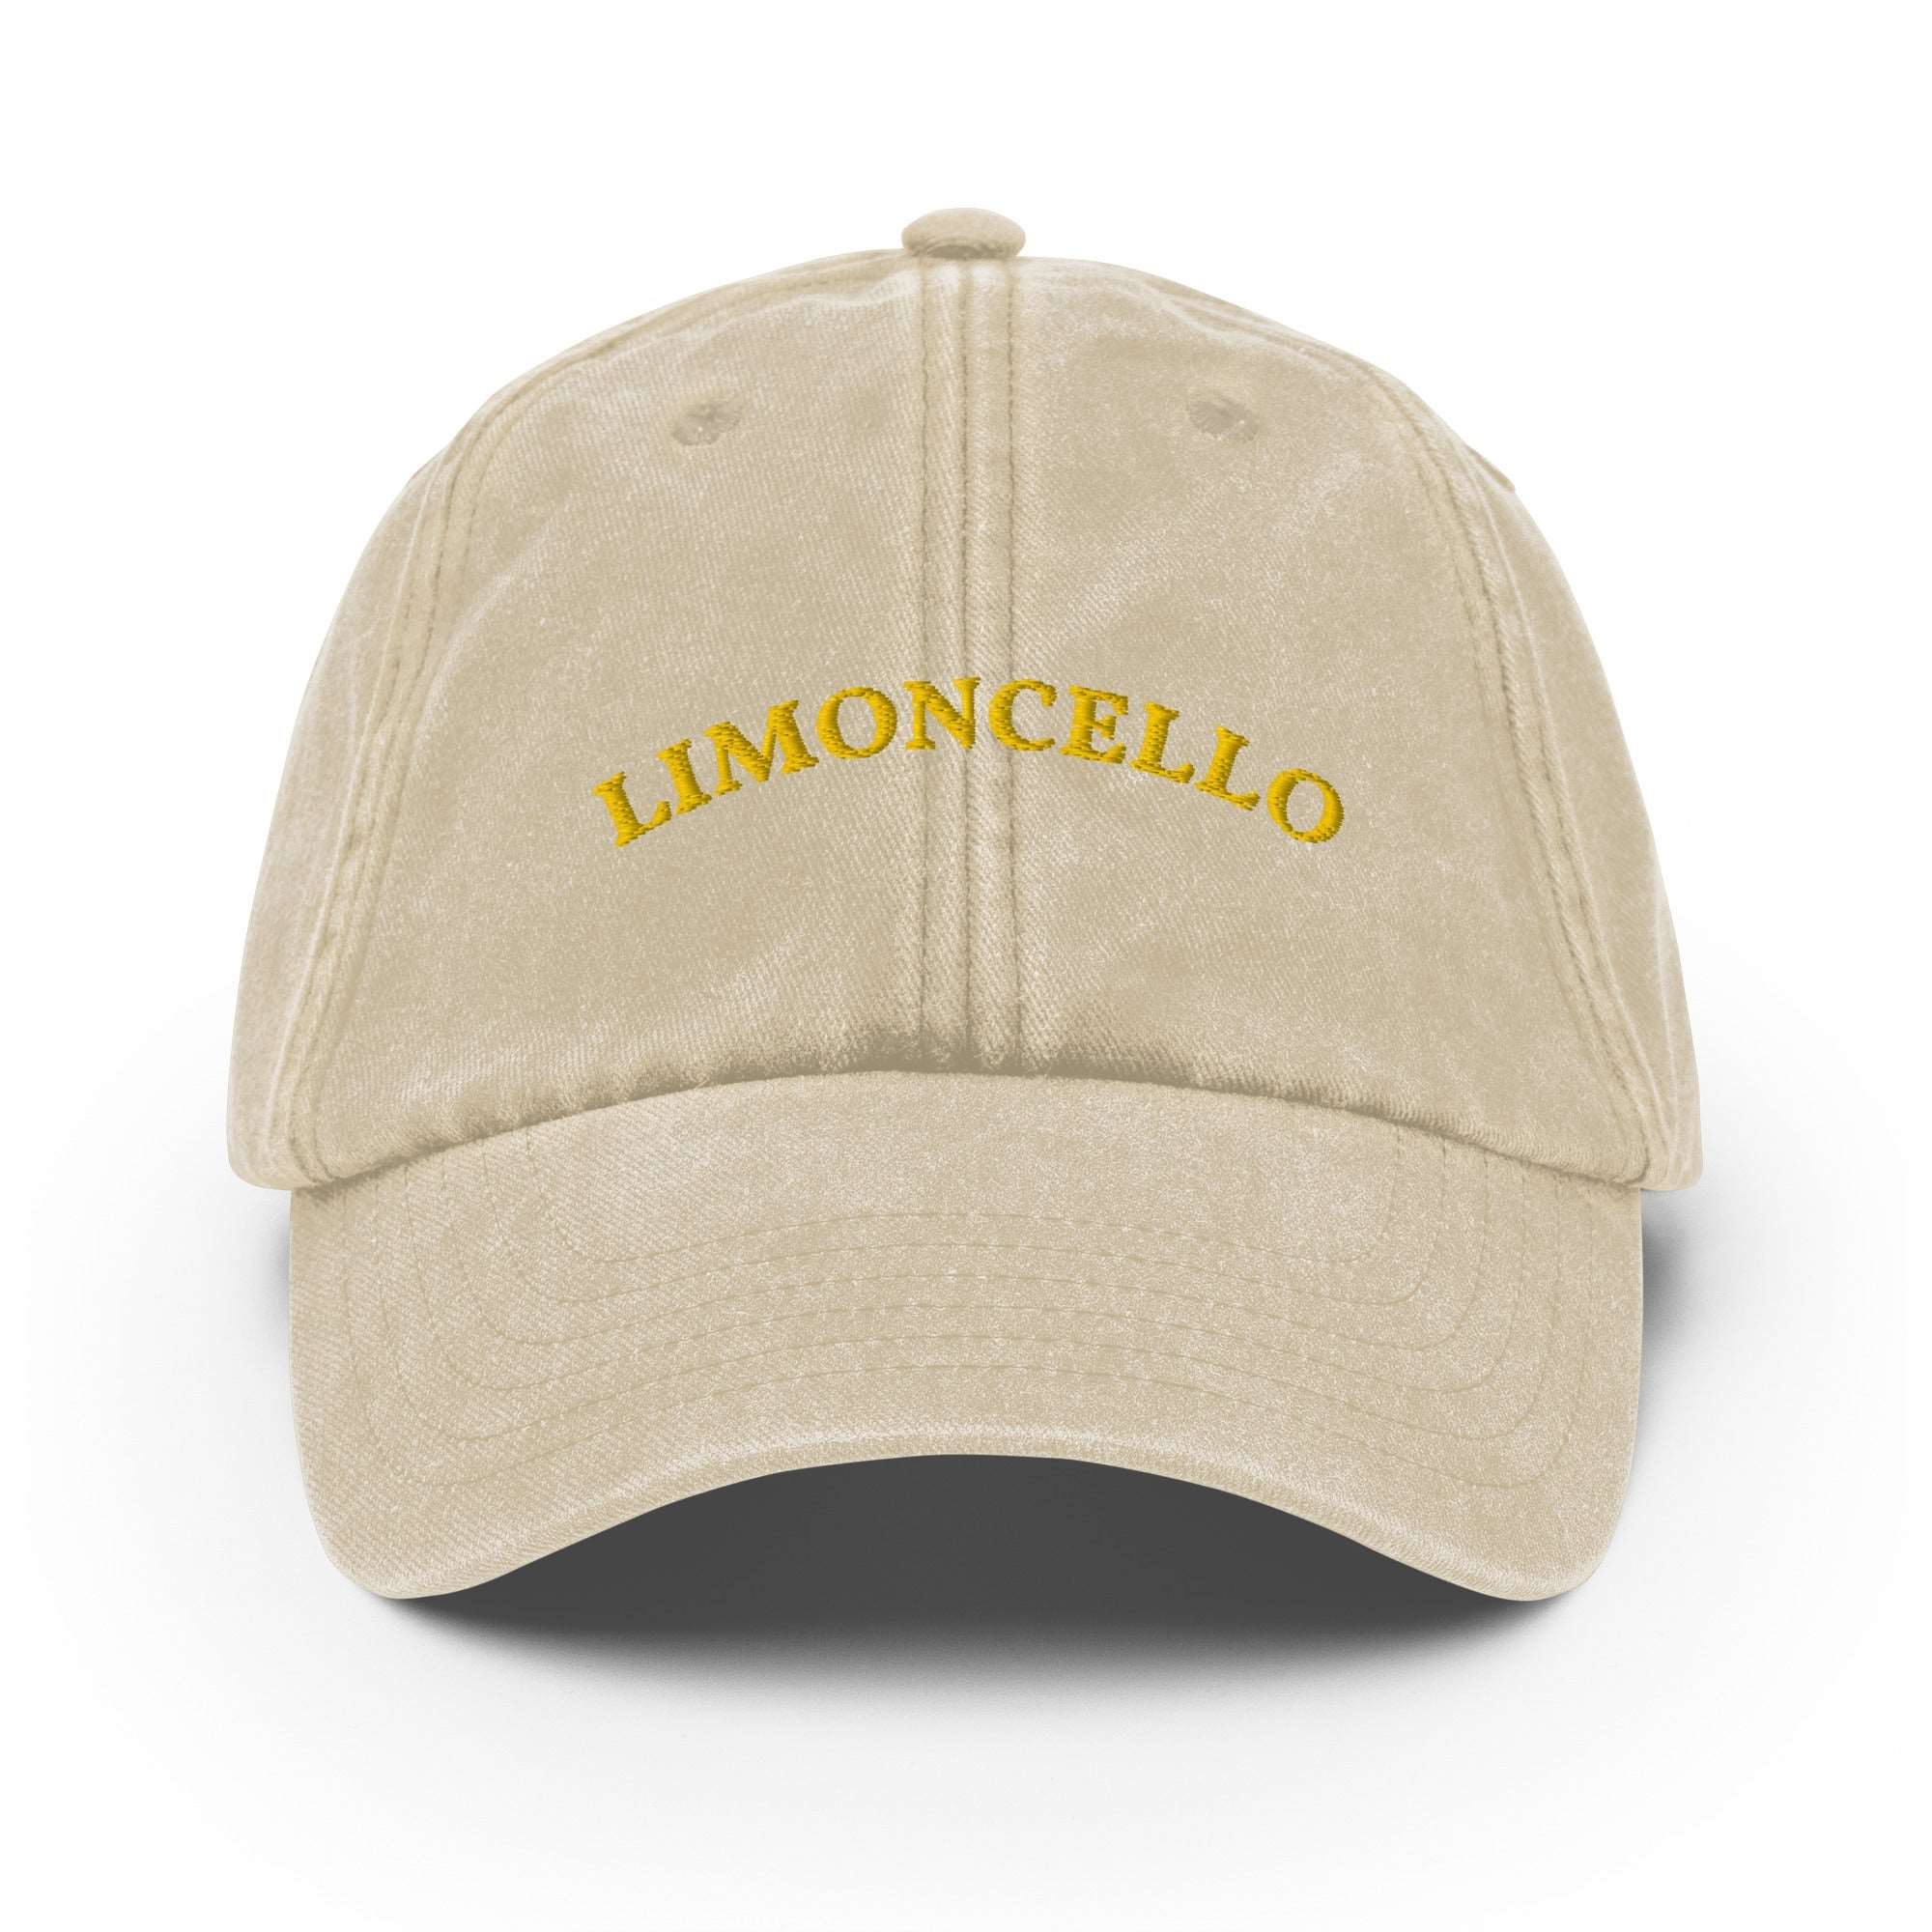 Limoncello Vintage Cap - The Refined Spirit